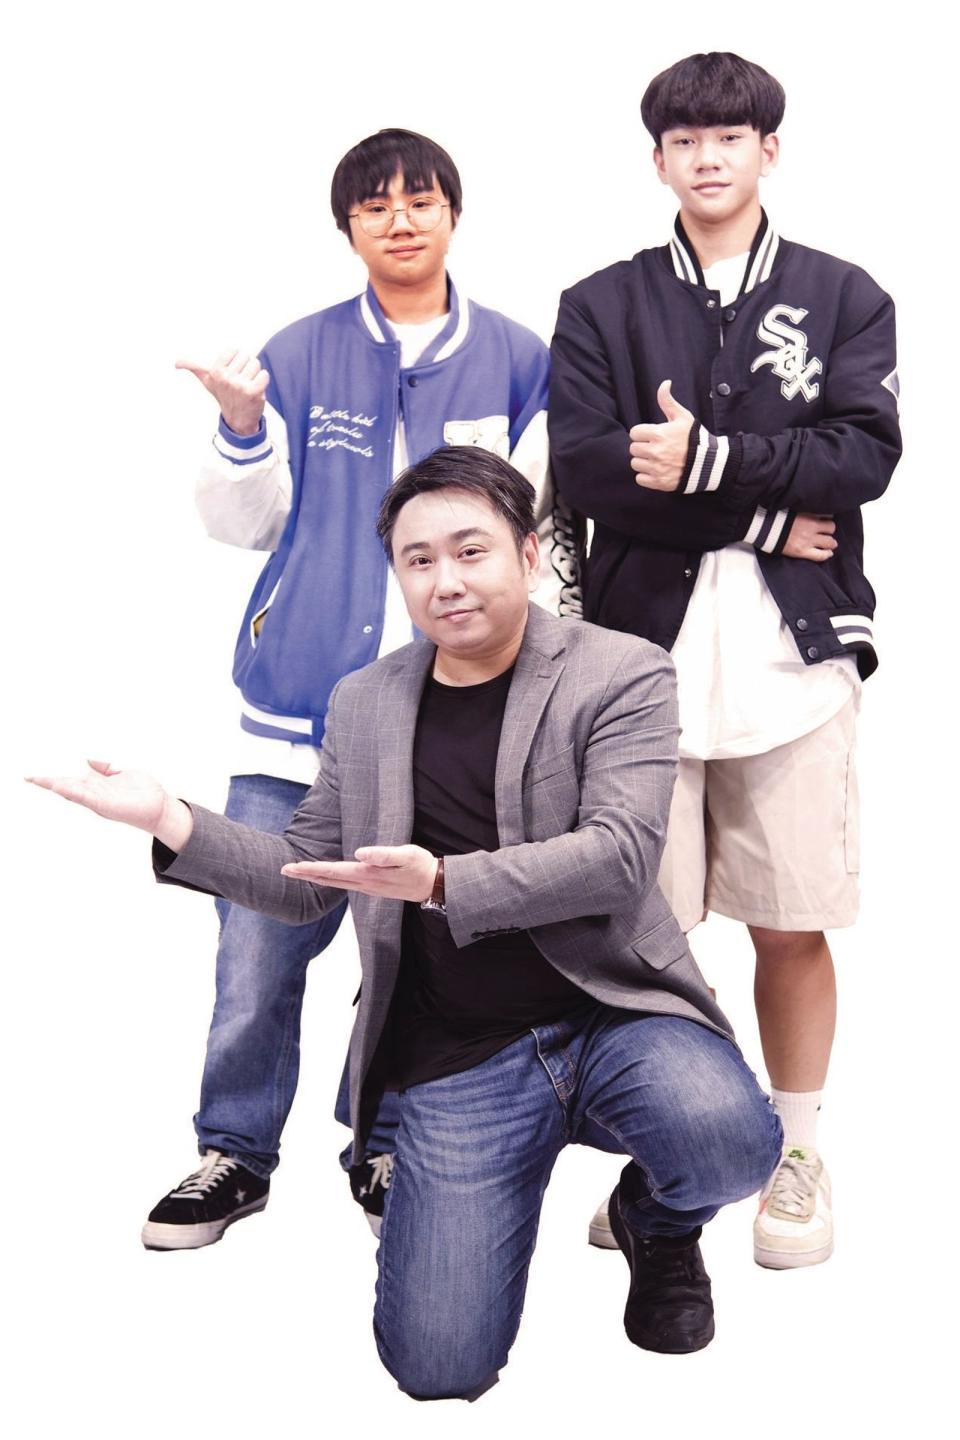 小小彬（左上）進入青春期後對演藝圈，較無興趣想專心學業。（彬彬正記國際有限公司提供）